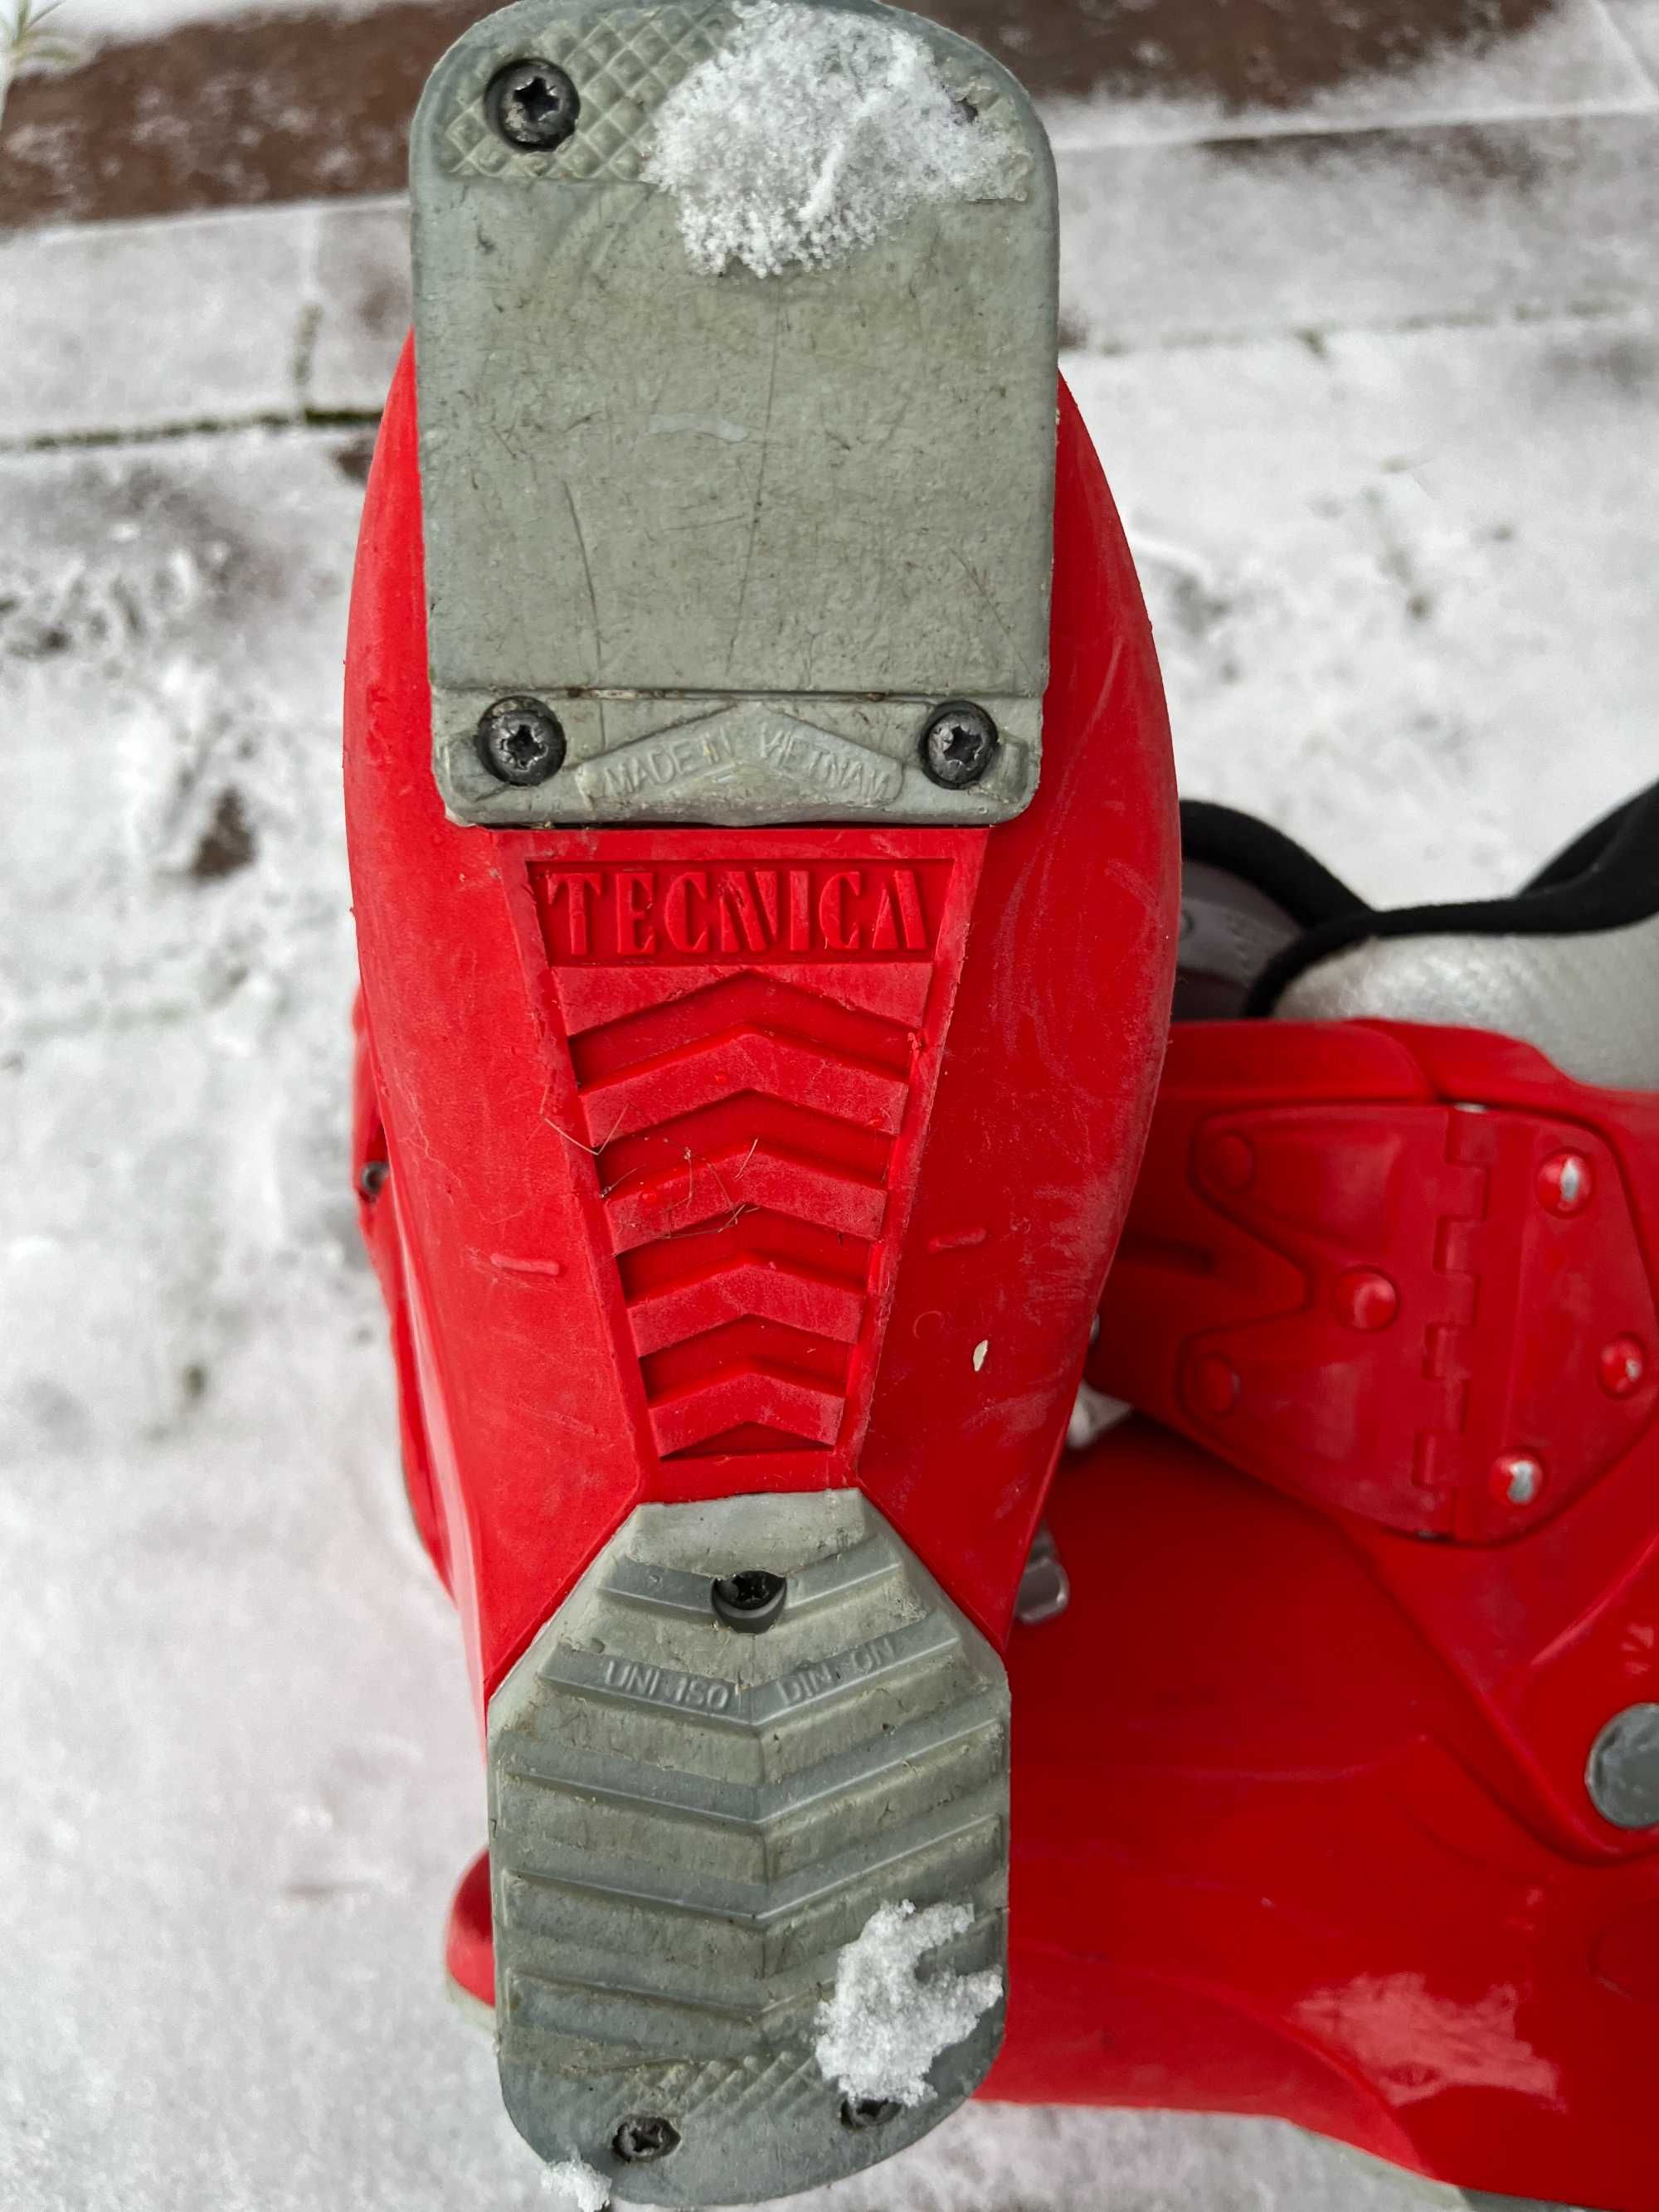 Buty narciarskie Tecnica, wkładka 210mm